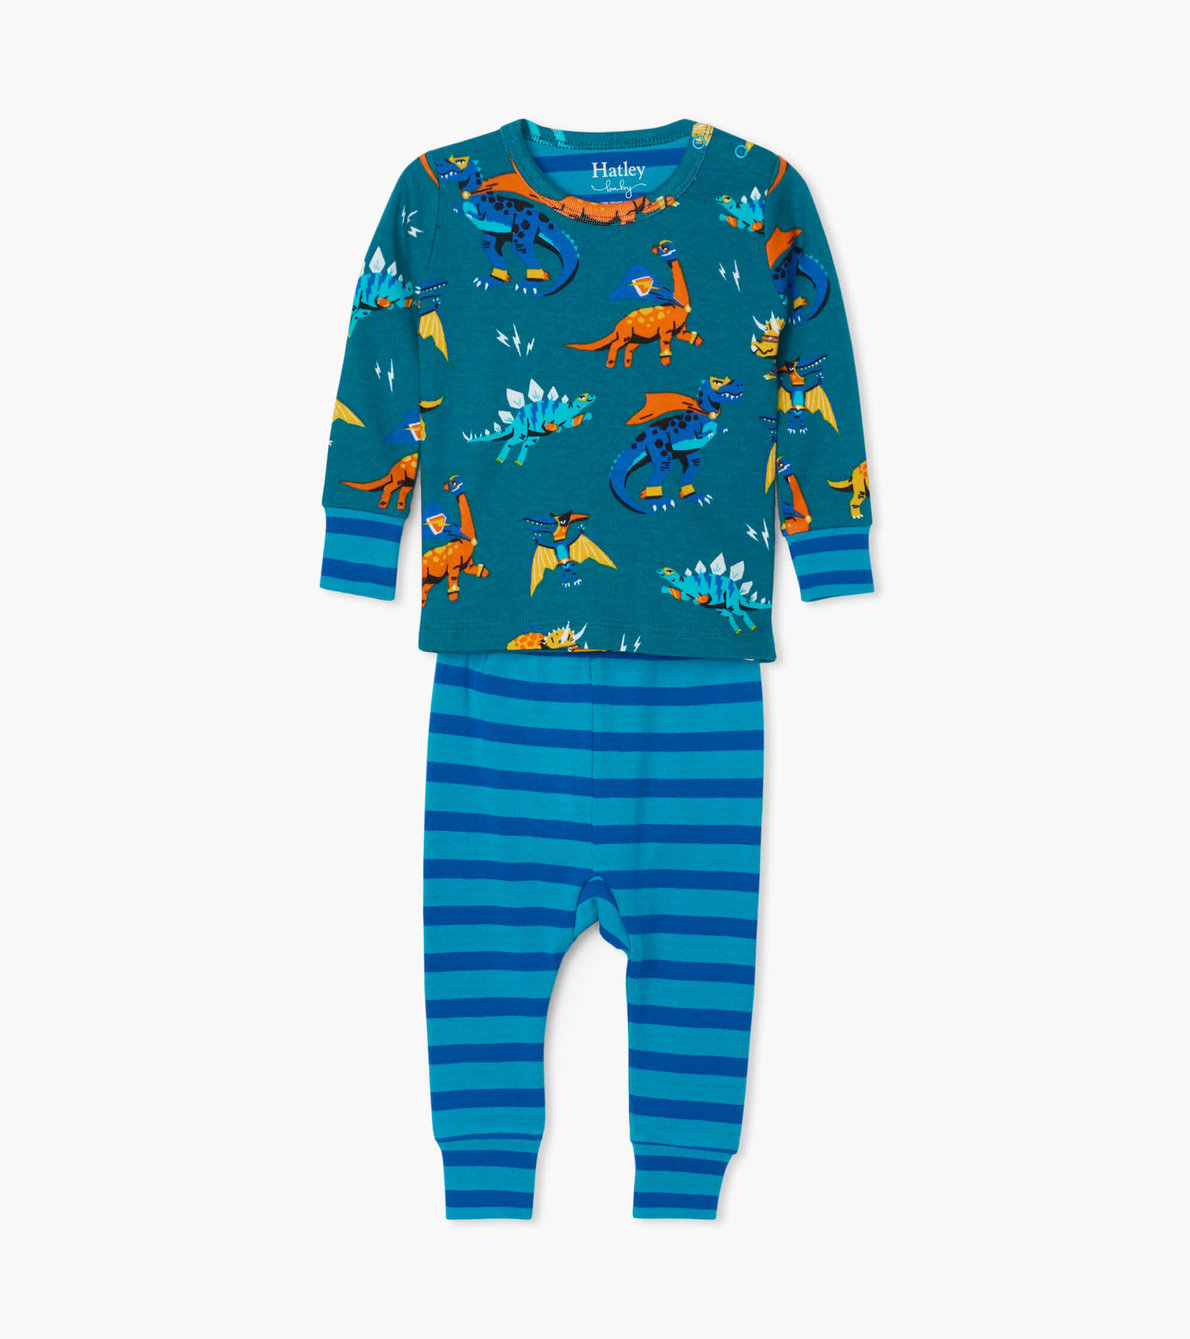 View larger image of Superhero Dinos Organic Cotton Baby Pajama Set